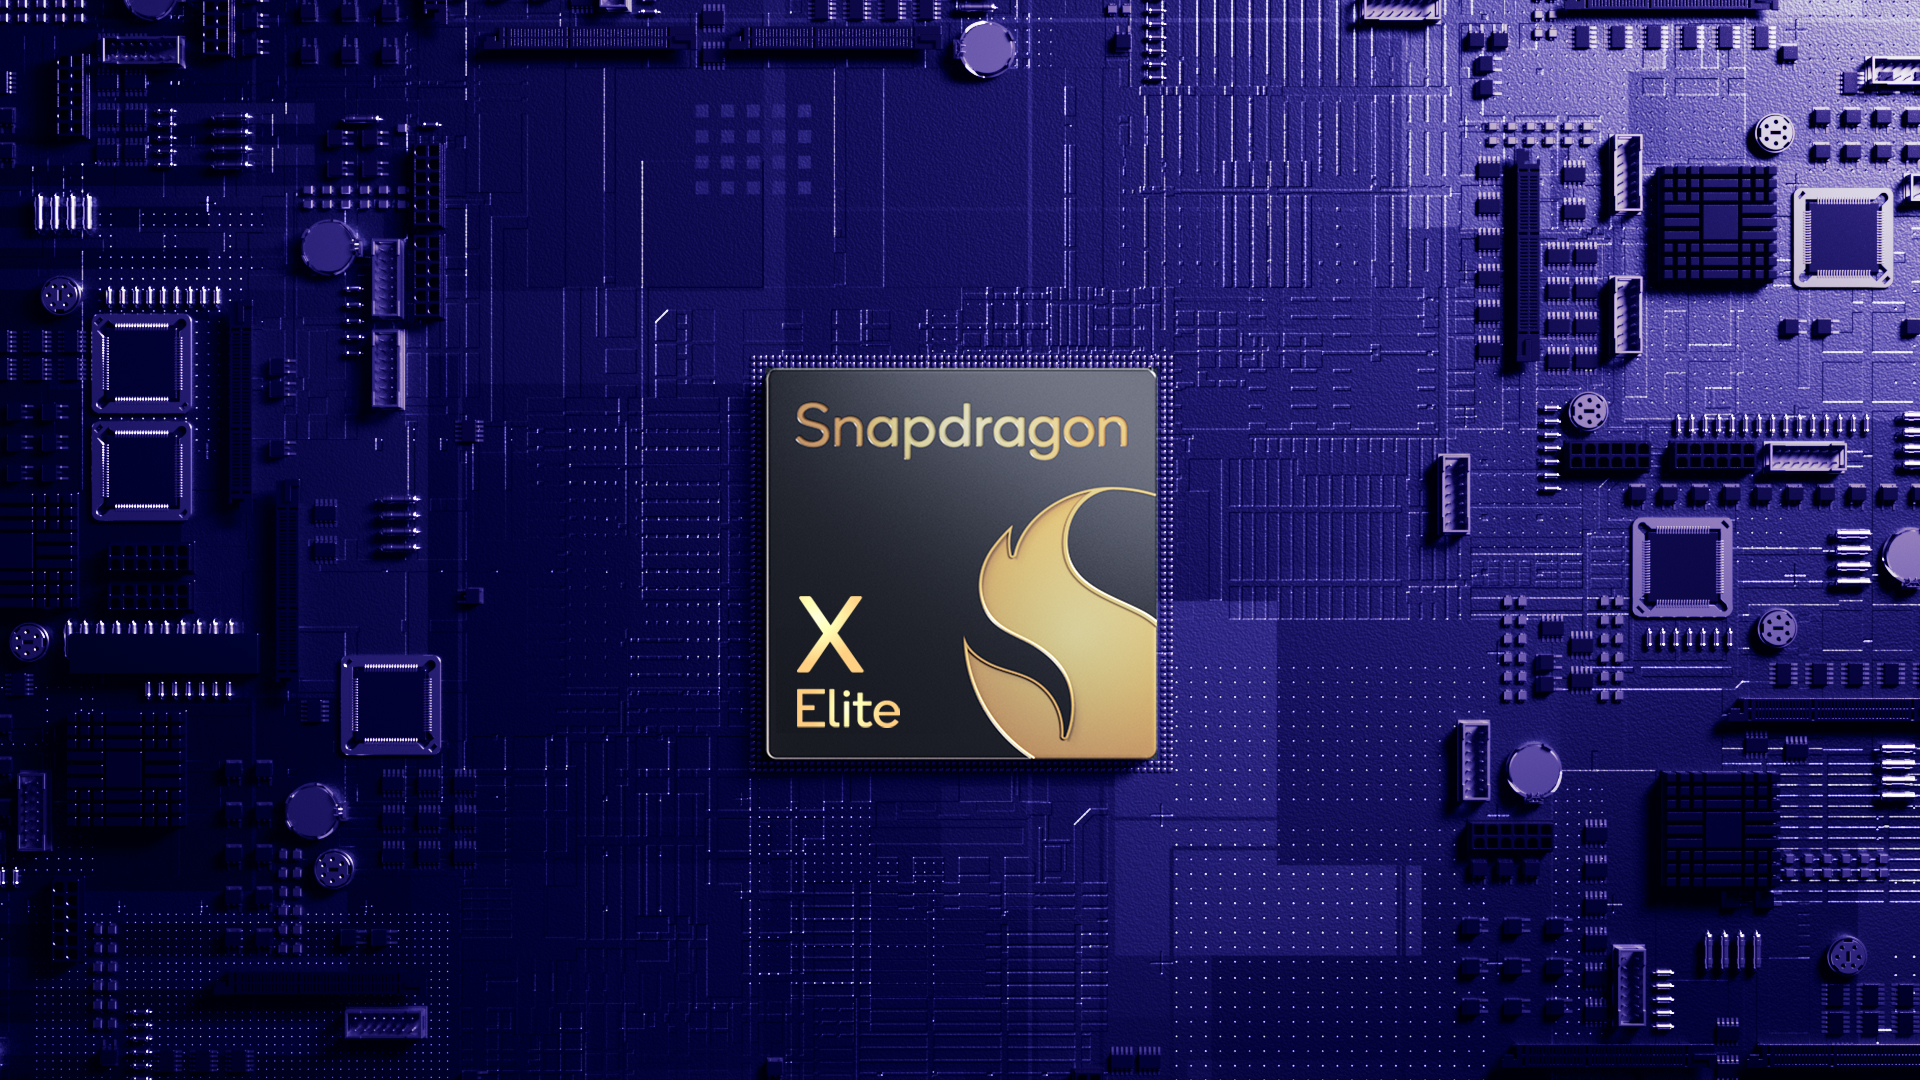 Procesor Snapdragon X Elite je postavený na inštrukčnej sade ARM, no má byť zdatnou konkurenciou aj voči etablovaným čipom x86-64 od Intelu a AMD.